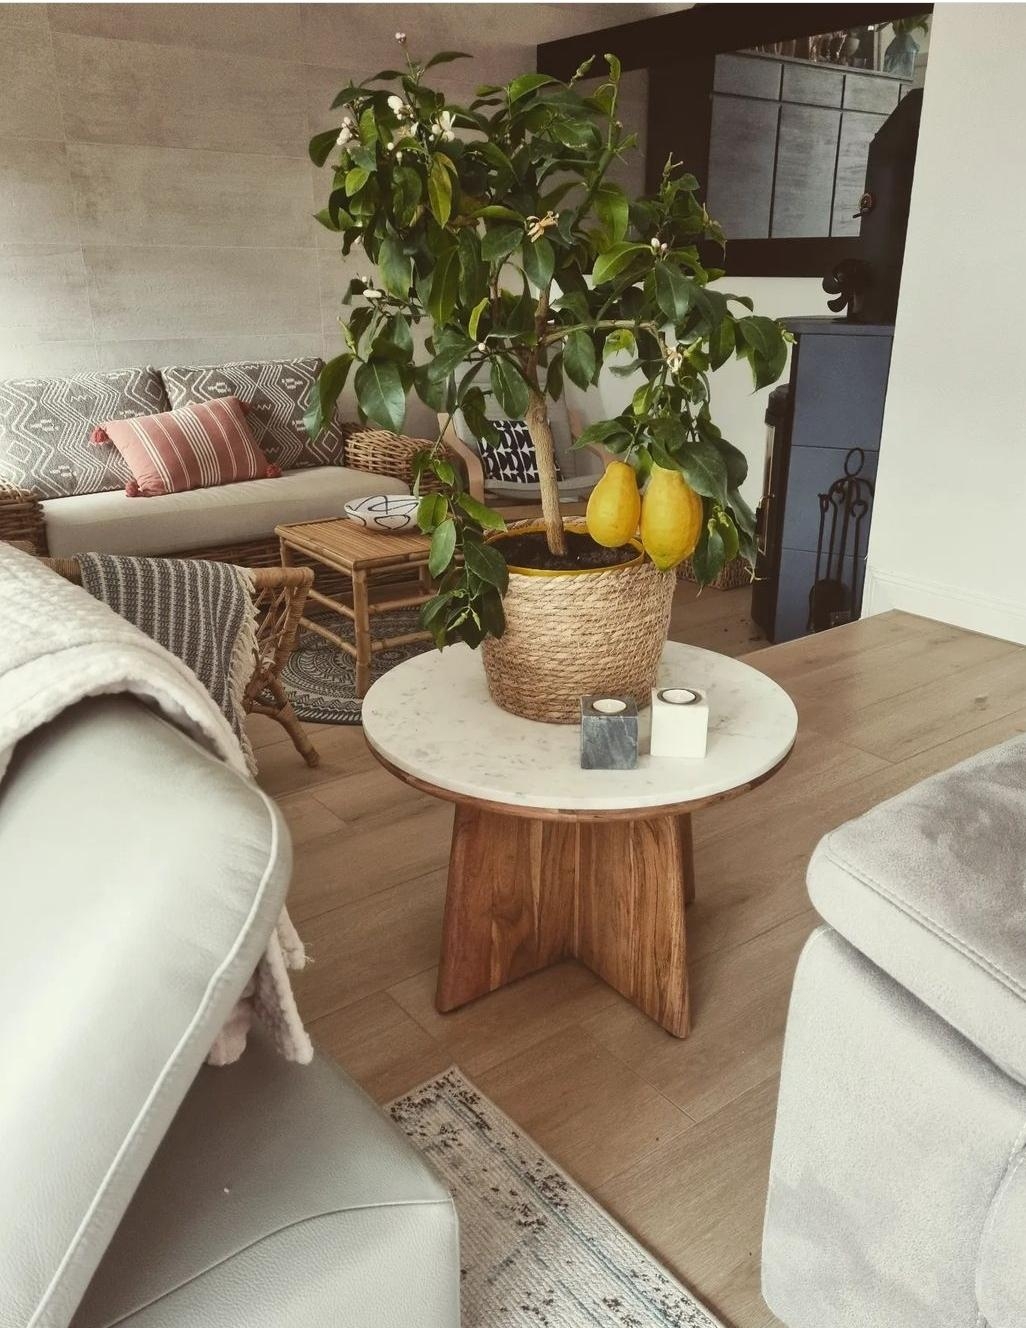 Der kleine Zitronenbaum und dieser Coffe Table gehören einfach zusammen 😍
#livingchallenge #wohnzimmer #lemontree #cof 